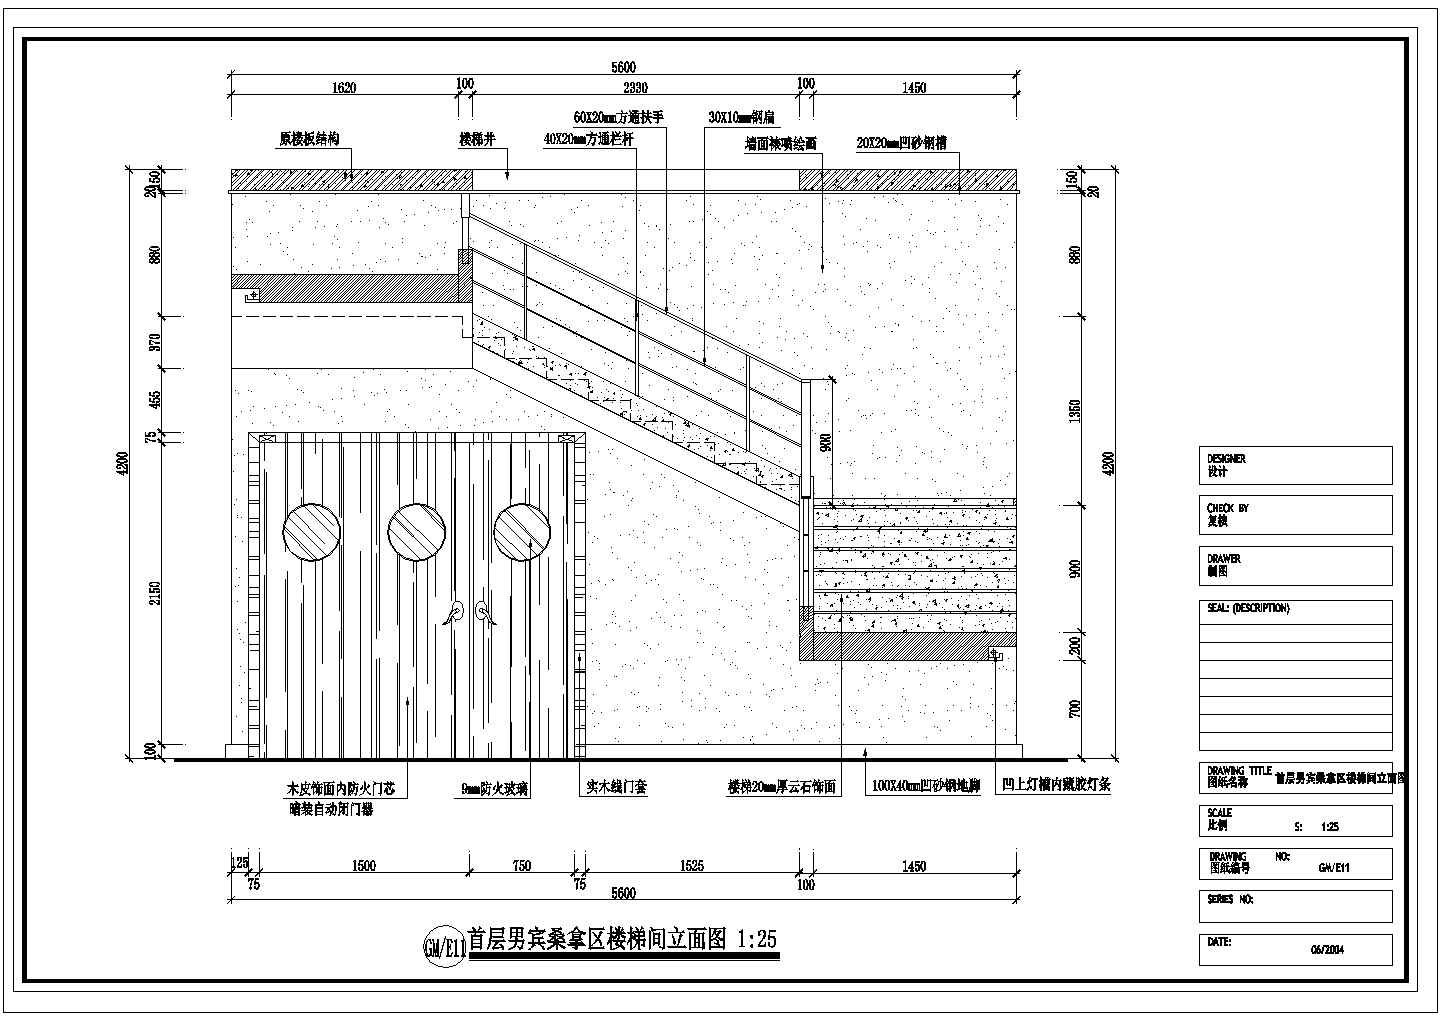 某大型洗浴空间男宾桑拿区装修图首层男宾桑拿区楼梯间CAD设计立面图